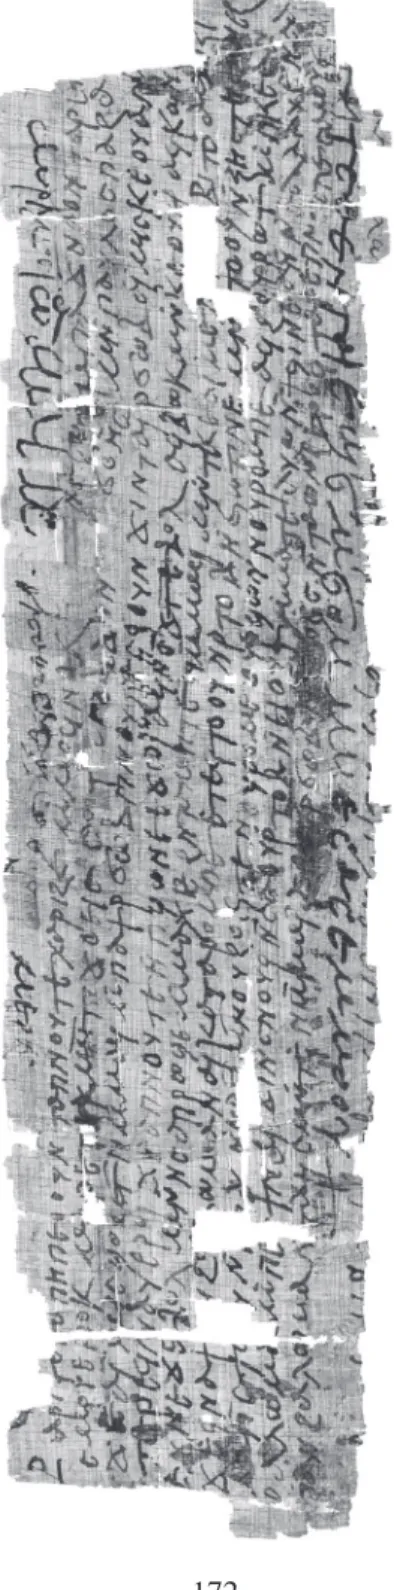 fiG. 3. —P. Vindob. Inv. K 950  (= SB Kopt. IV 1709), recto © Österreichische Nationalbibliothek, Papyrussammlung